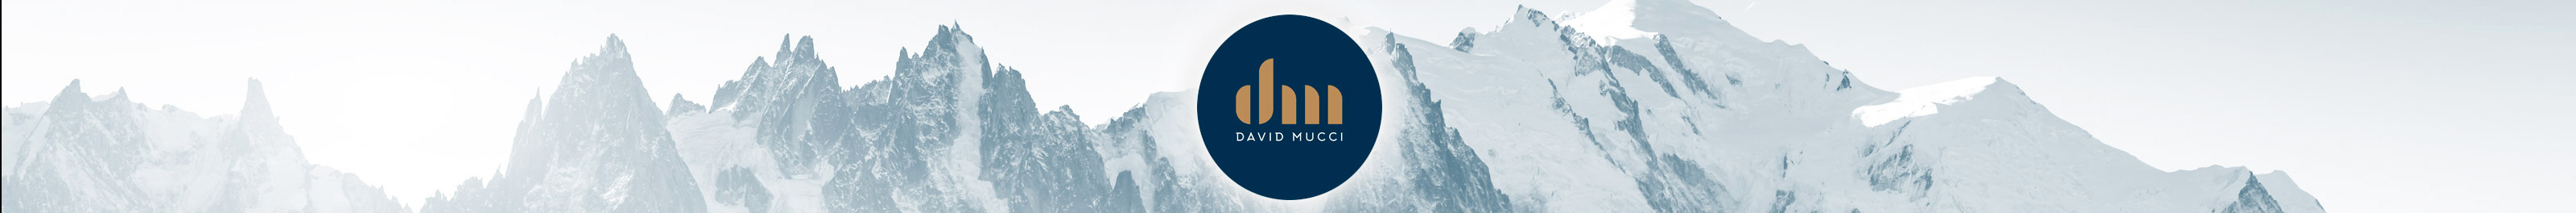 David Mucci's profile banner